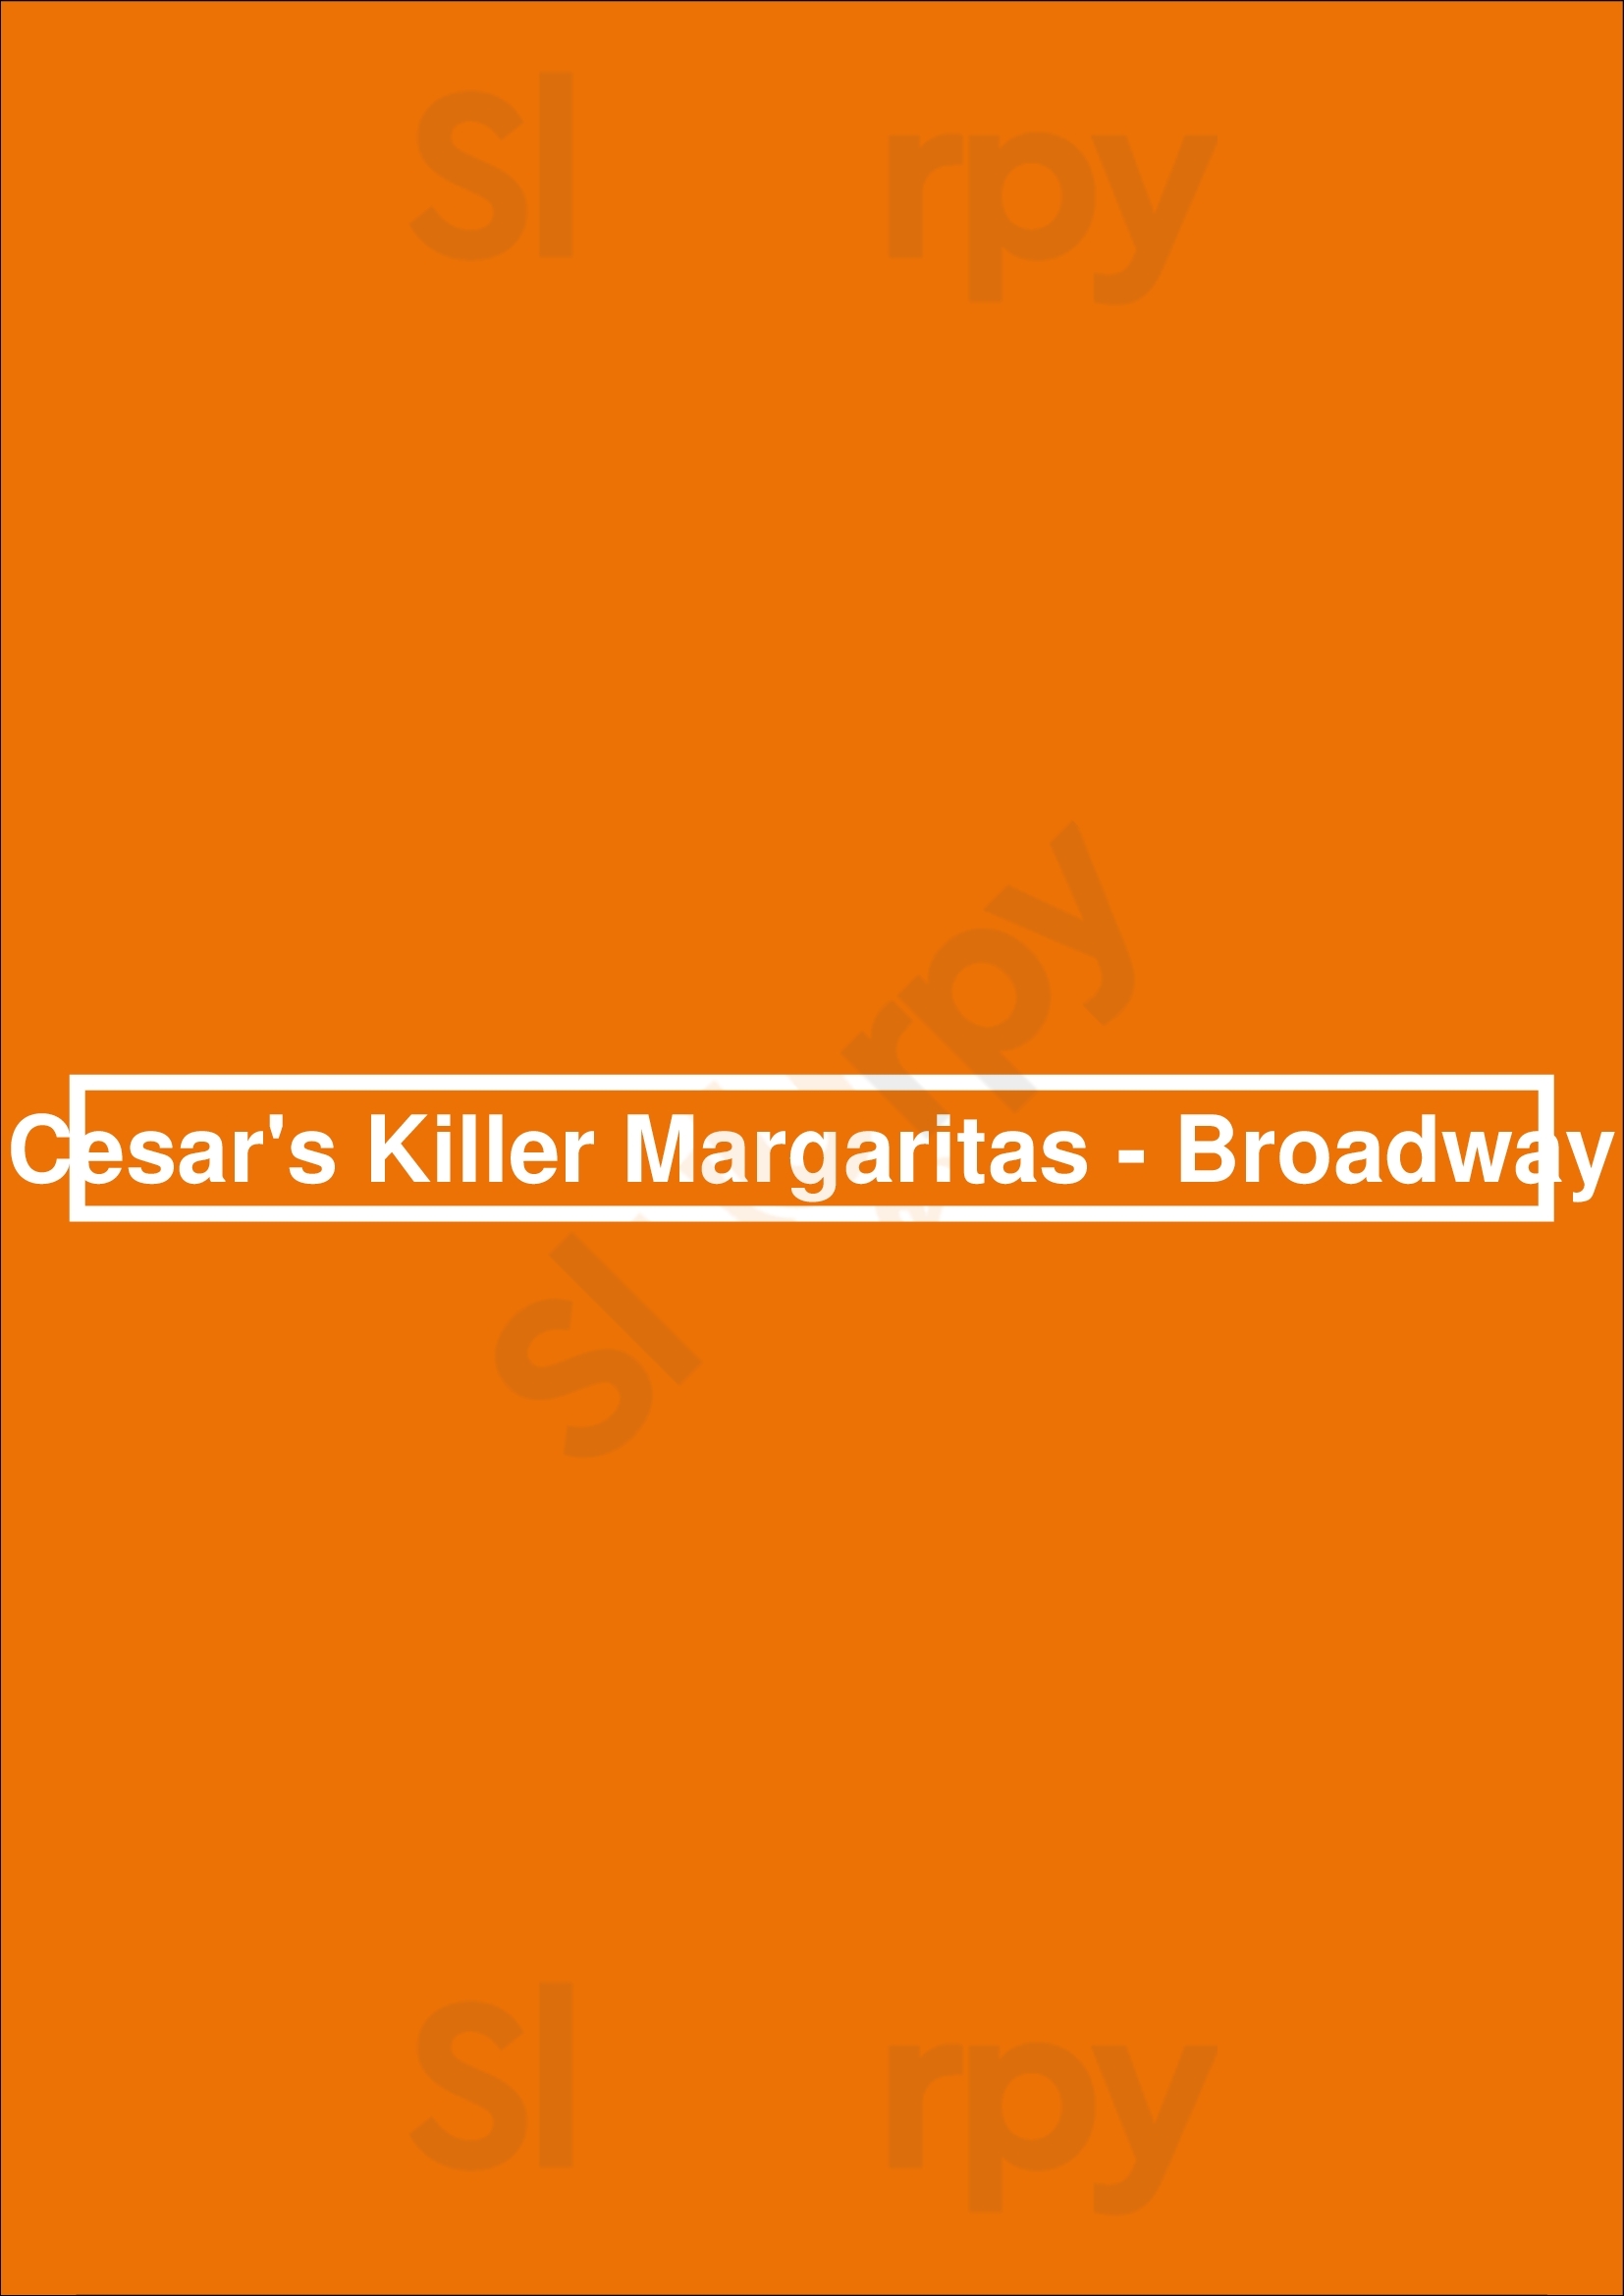 Cesar's Killer Margaritas - Broadway Chicago Menu - 1